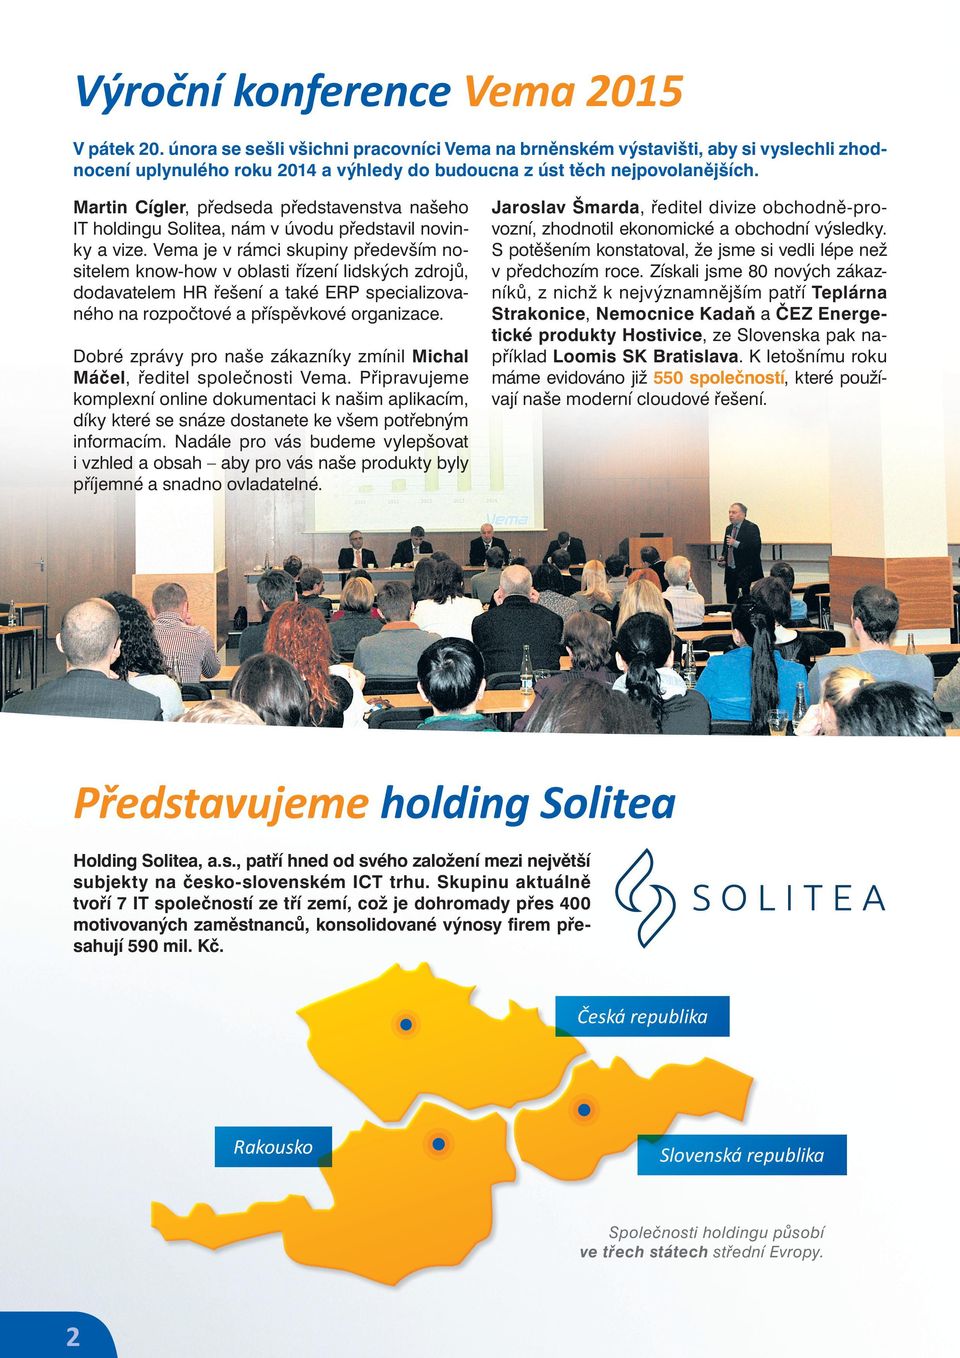 Martin Cígler, předseda představenstva našeho IT holdingu Solitea, nám v úvodu představil novinky a vize.